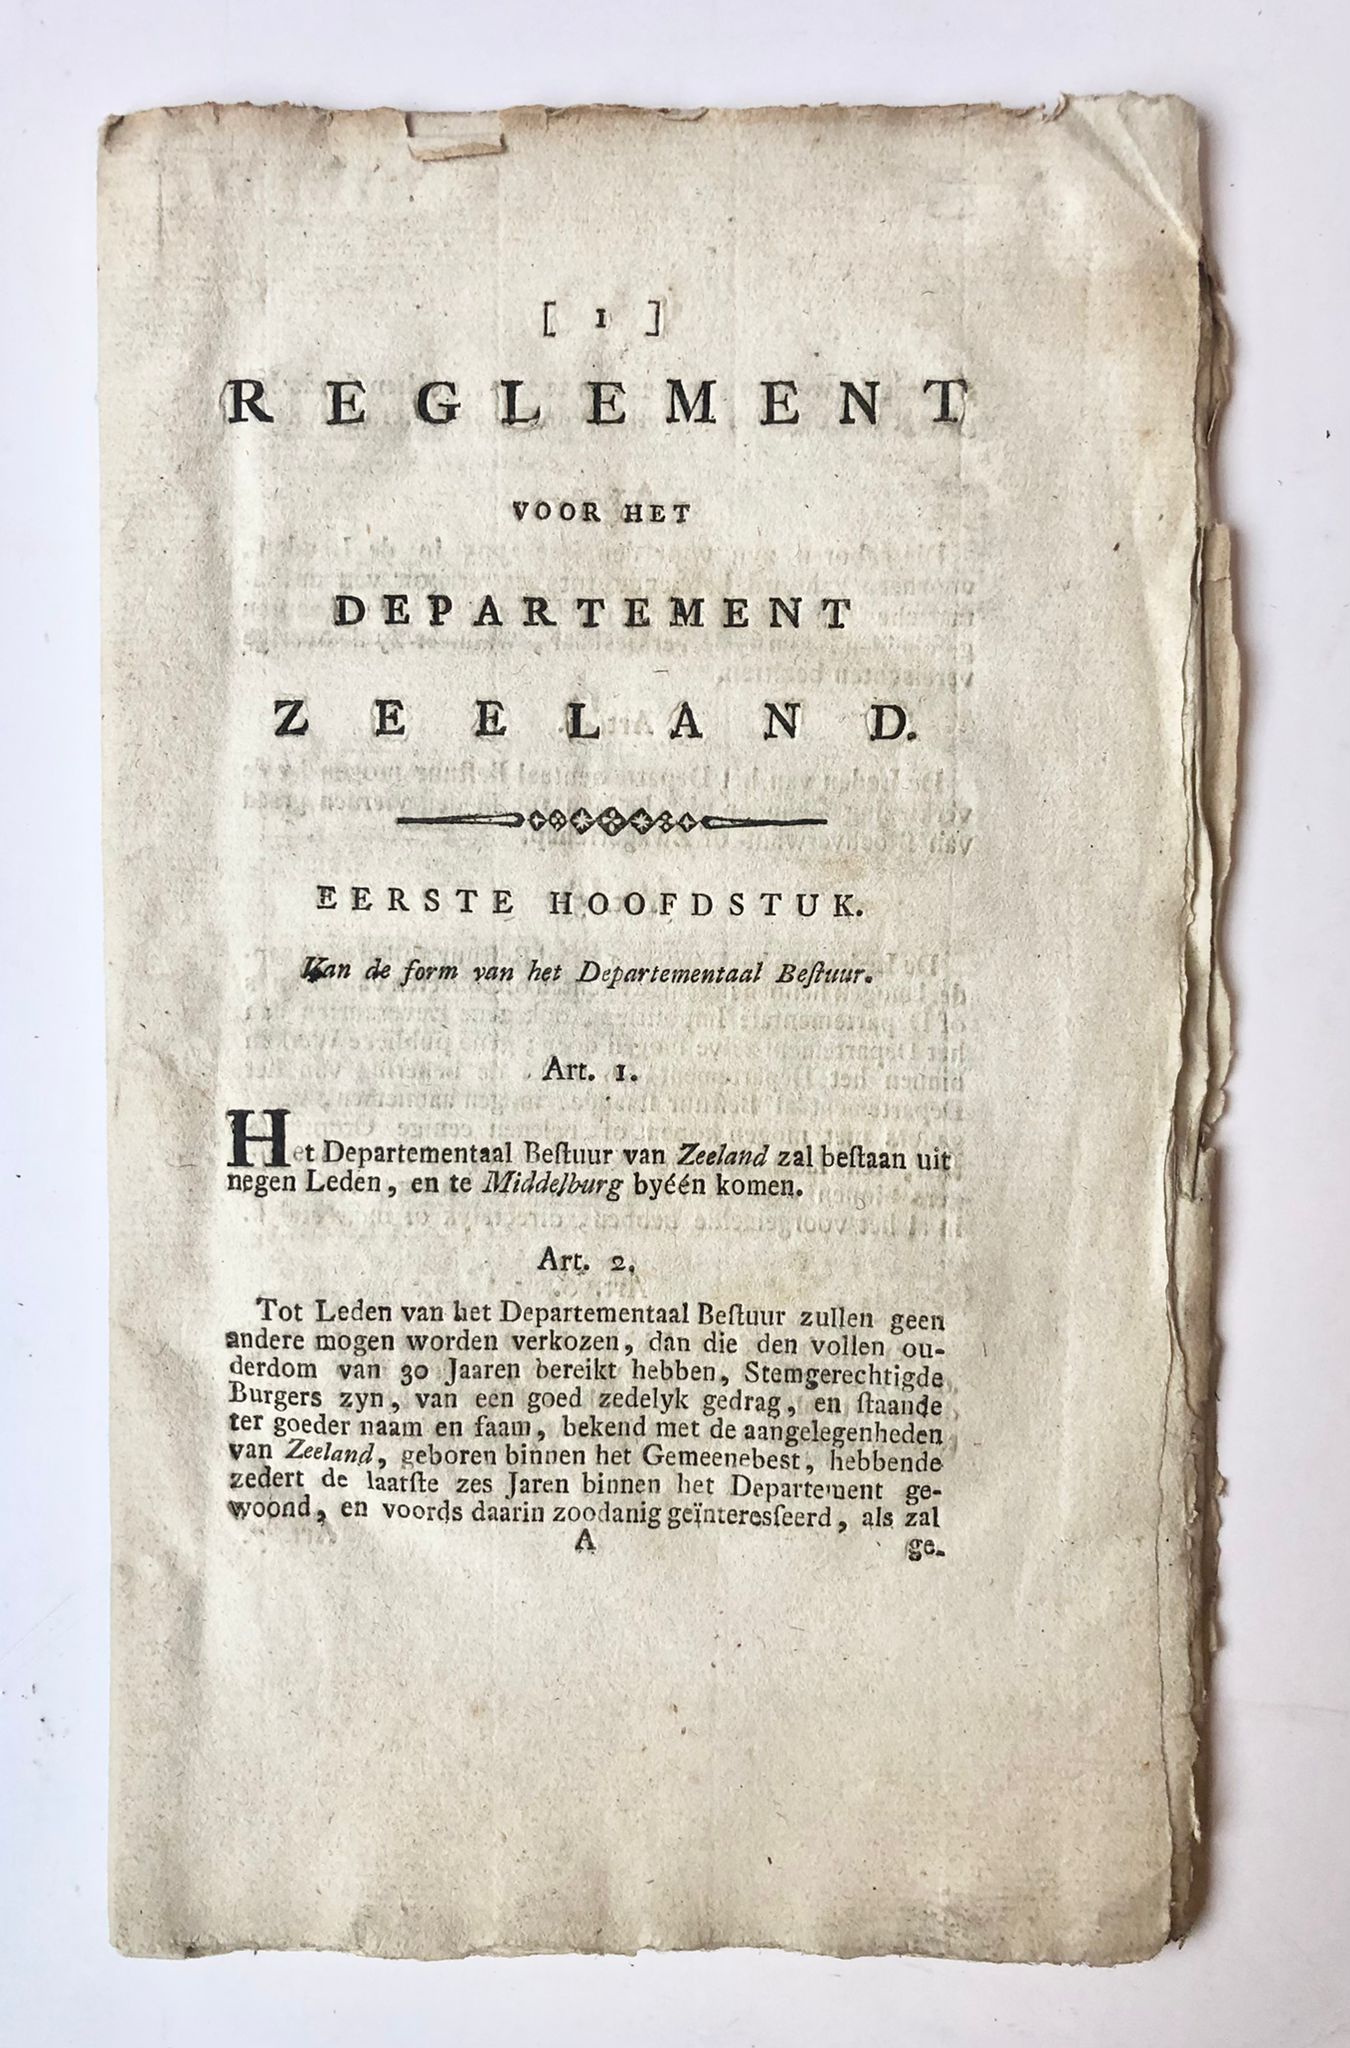 [Zeeland, [1802]] [1] Reglement voor het departement Zeeland, Eerste hoofdstuk van de form van het Departement Bestuur, [s.n., s.l. [1802], 17 pp.